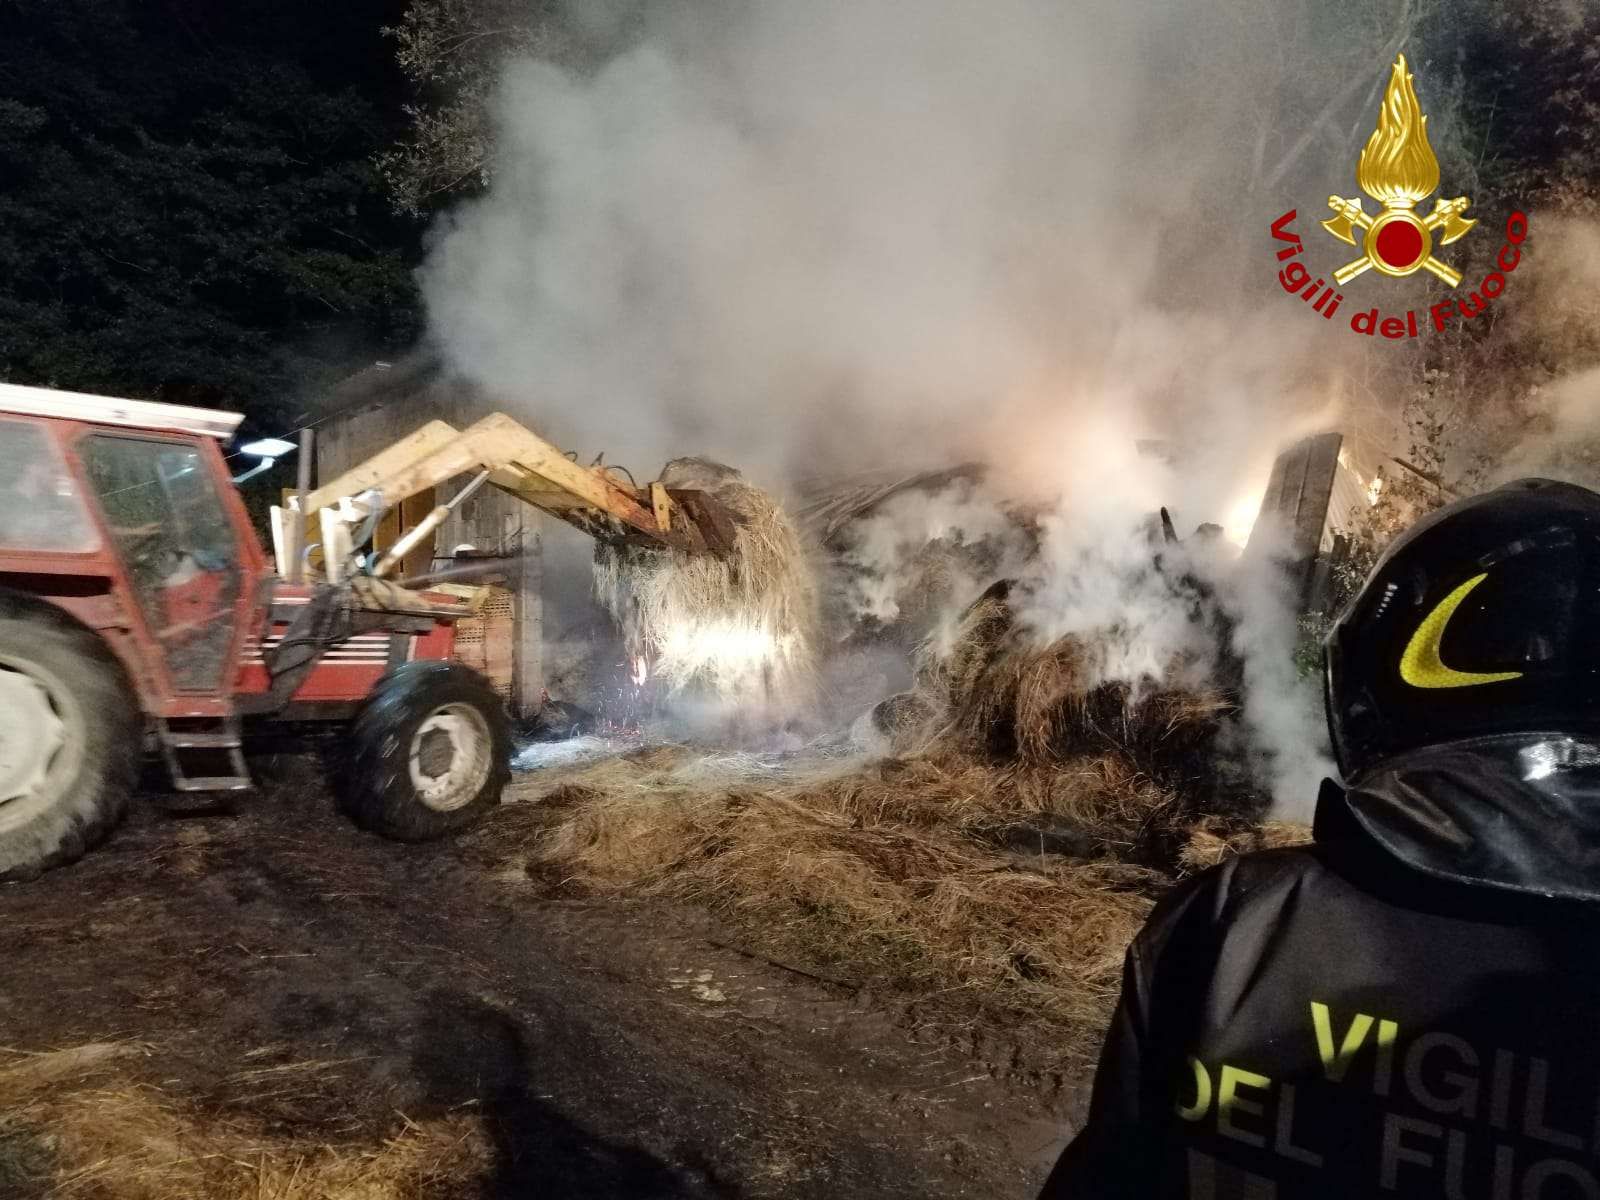 Incendio in un fienile nel Vibonese, intervengono i Vigili